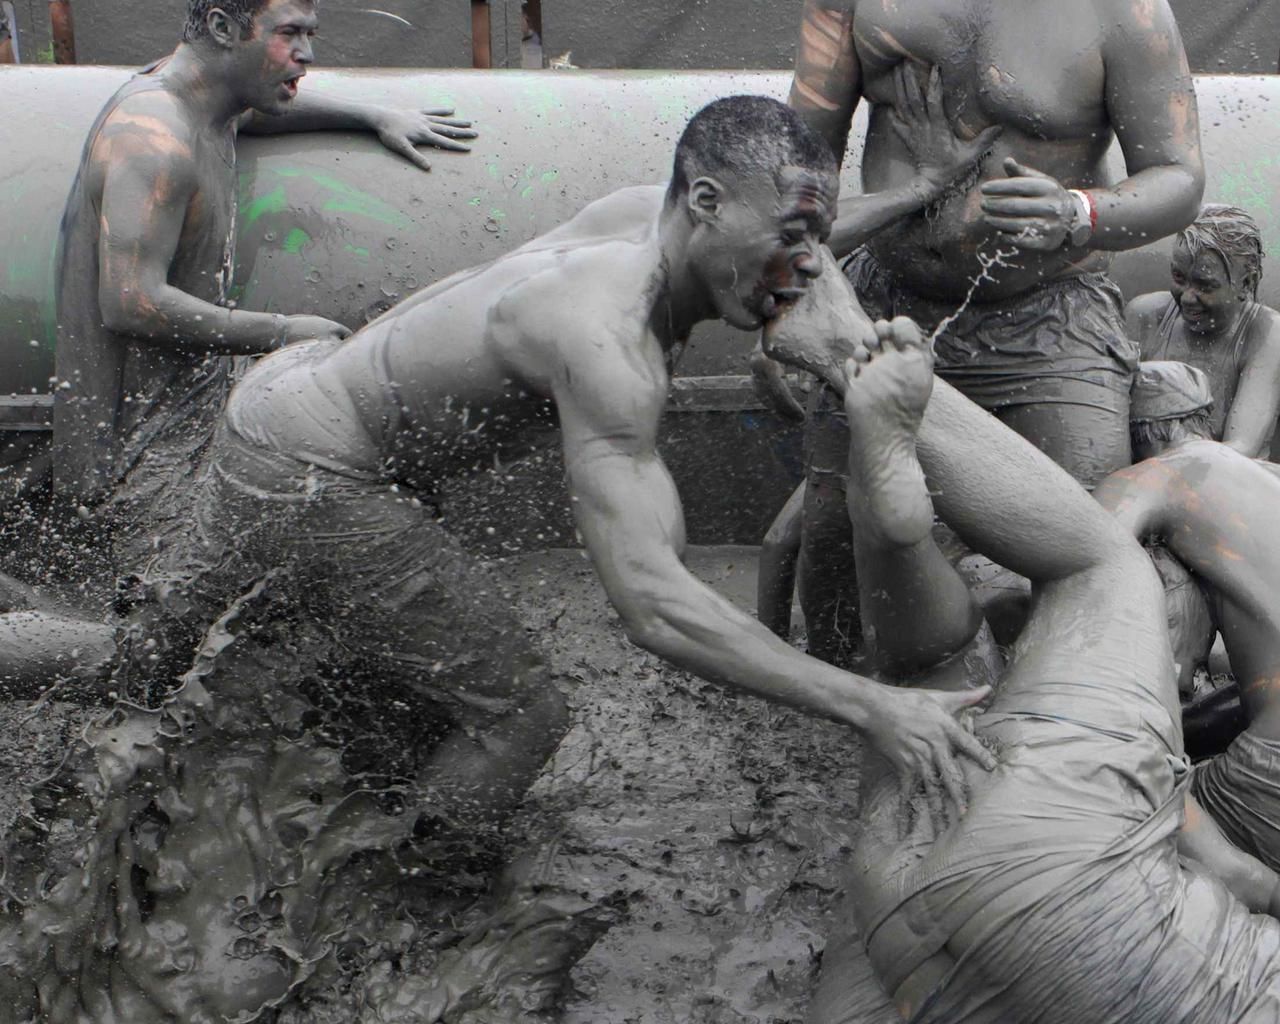 Obrazem: Bahenní festival Boryeong Mud v Jižní Koreji